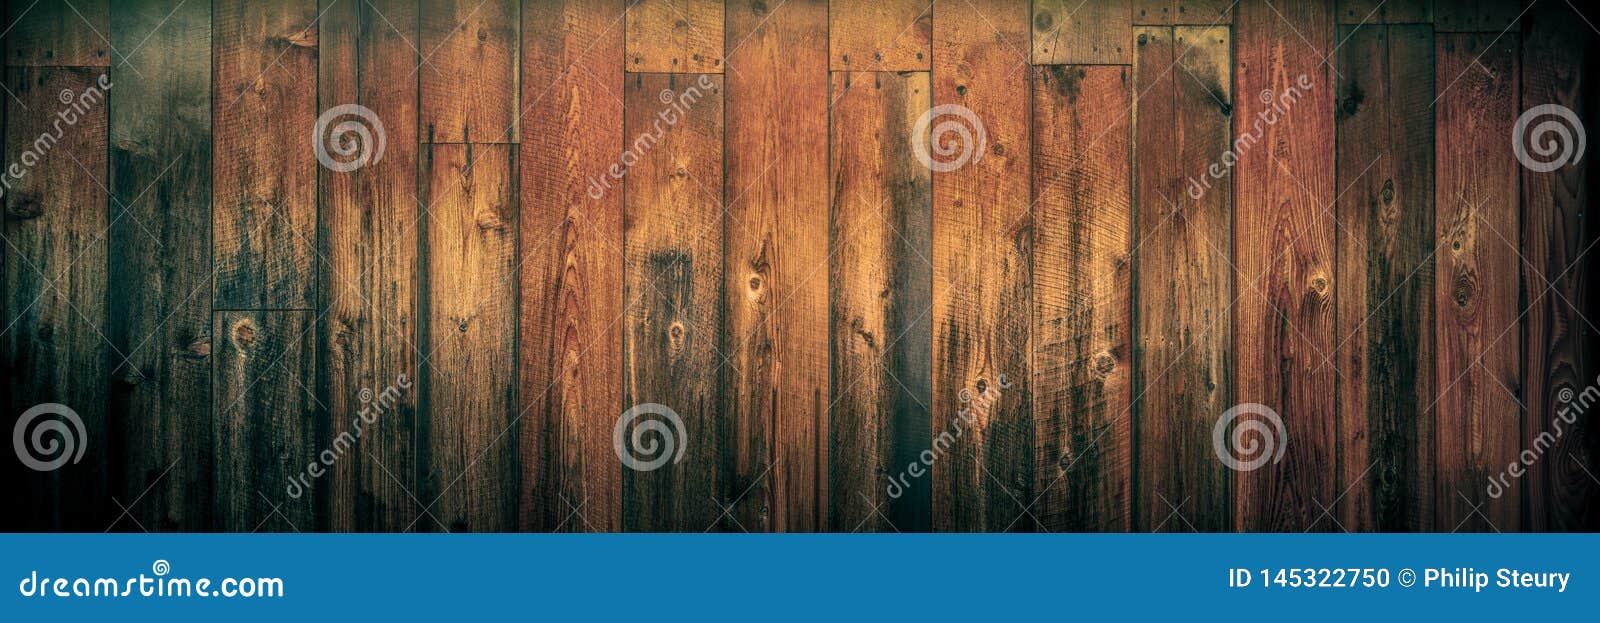 dark weathered cedar wooden background with warm vintage effect